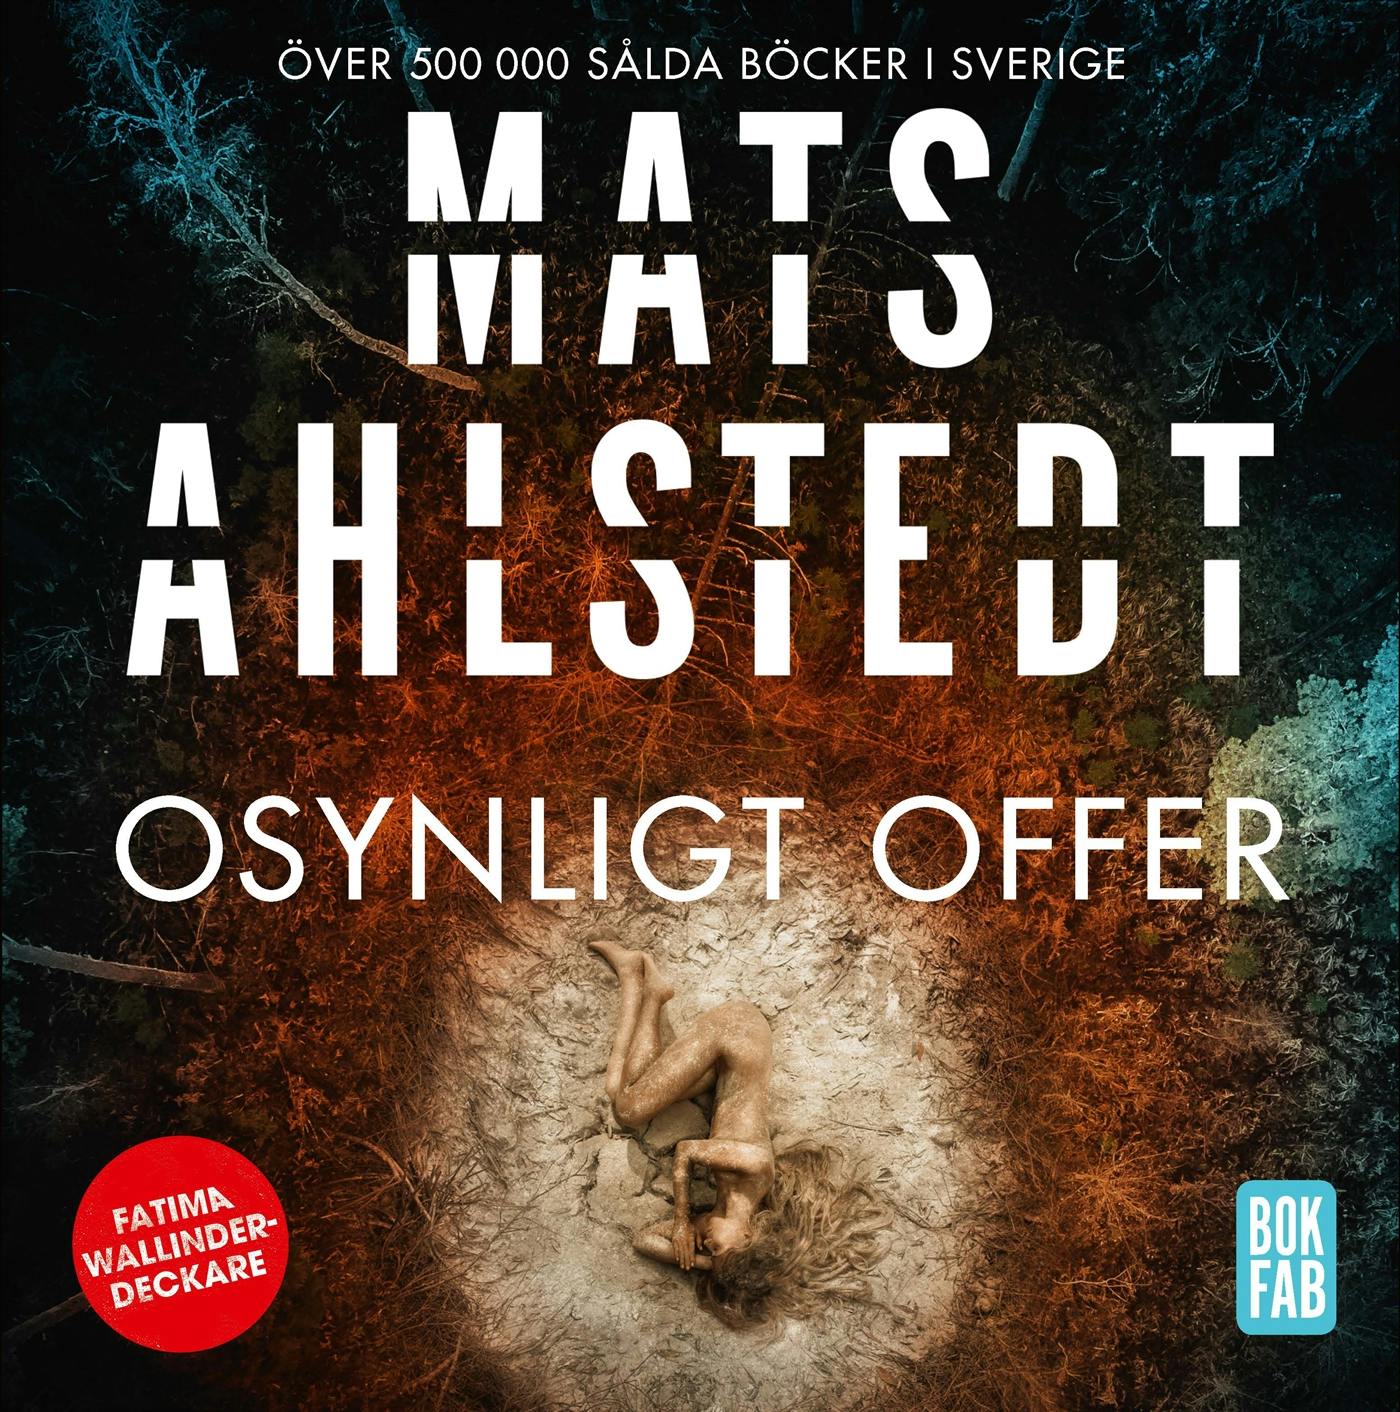 Osynligt offer - Mats Ahlstedt